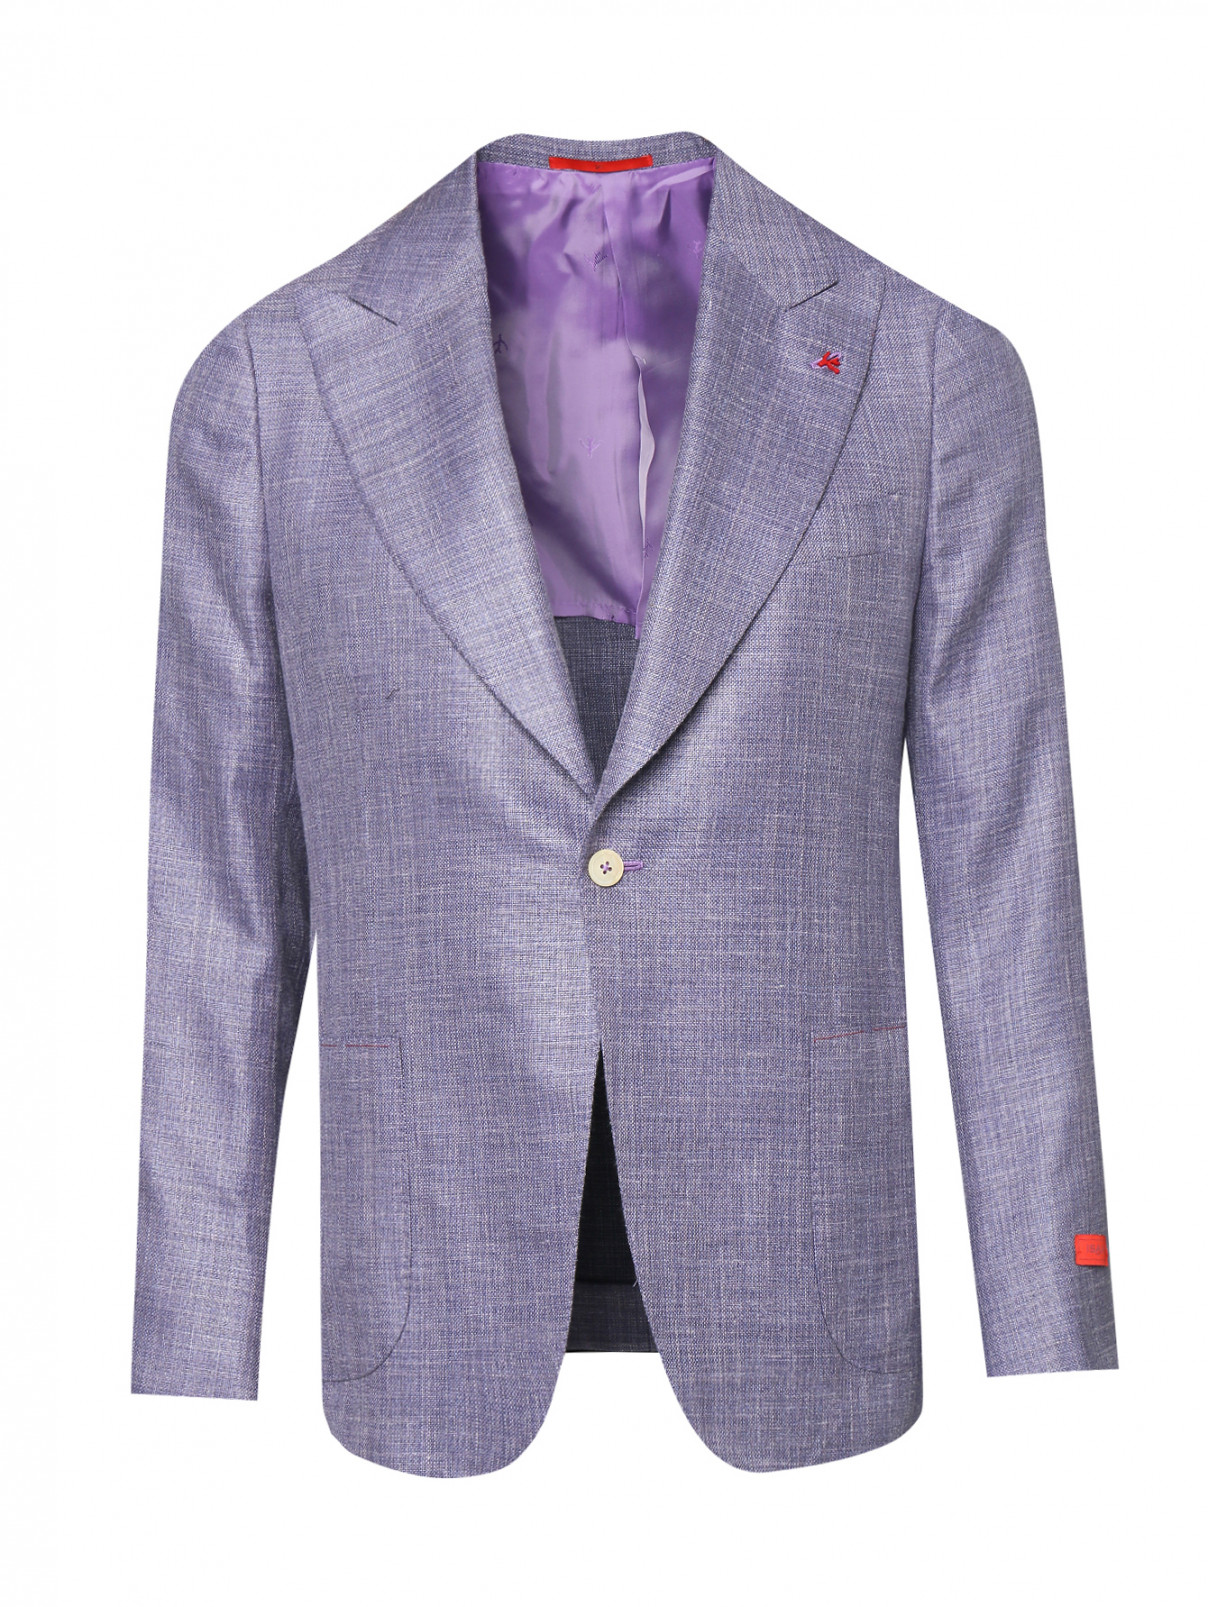 Пиджак из шерсти шелка и льна Isaia  –  Общий вид  – Цвет:  Фиолетовый